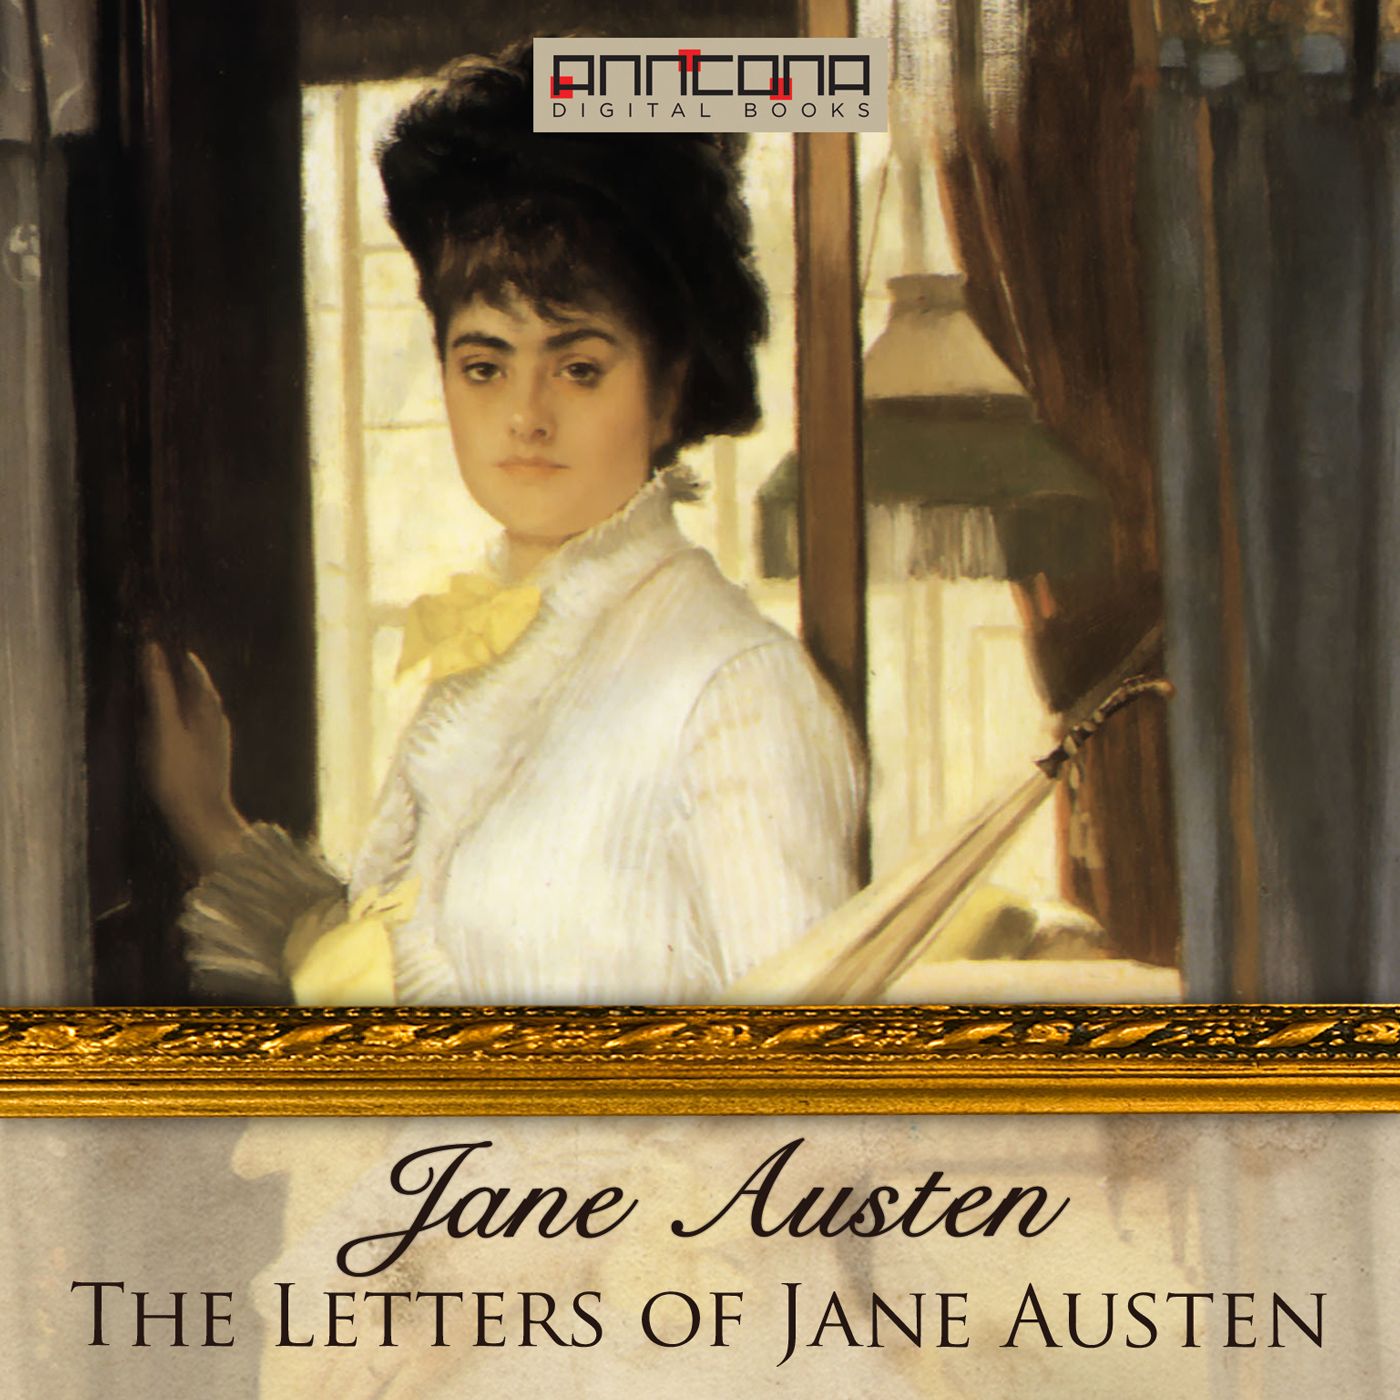 The Letters of Jane Austen, ljudbok av Jane Austen